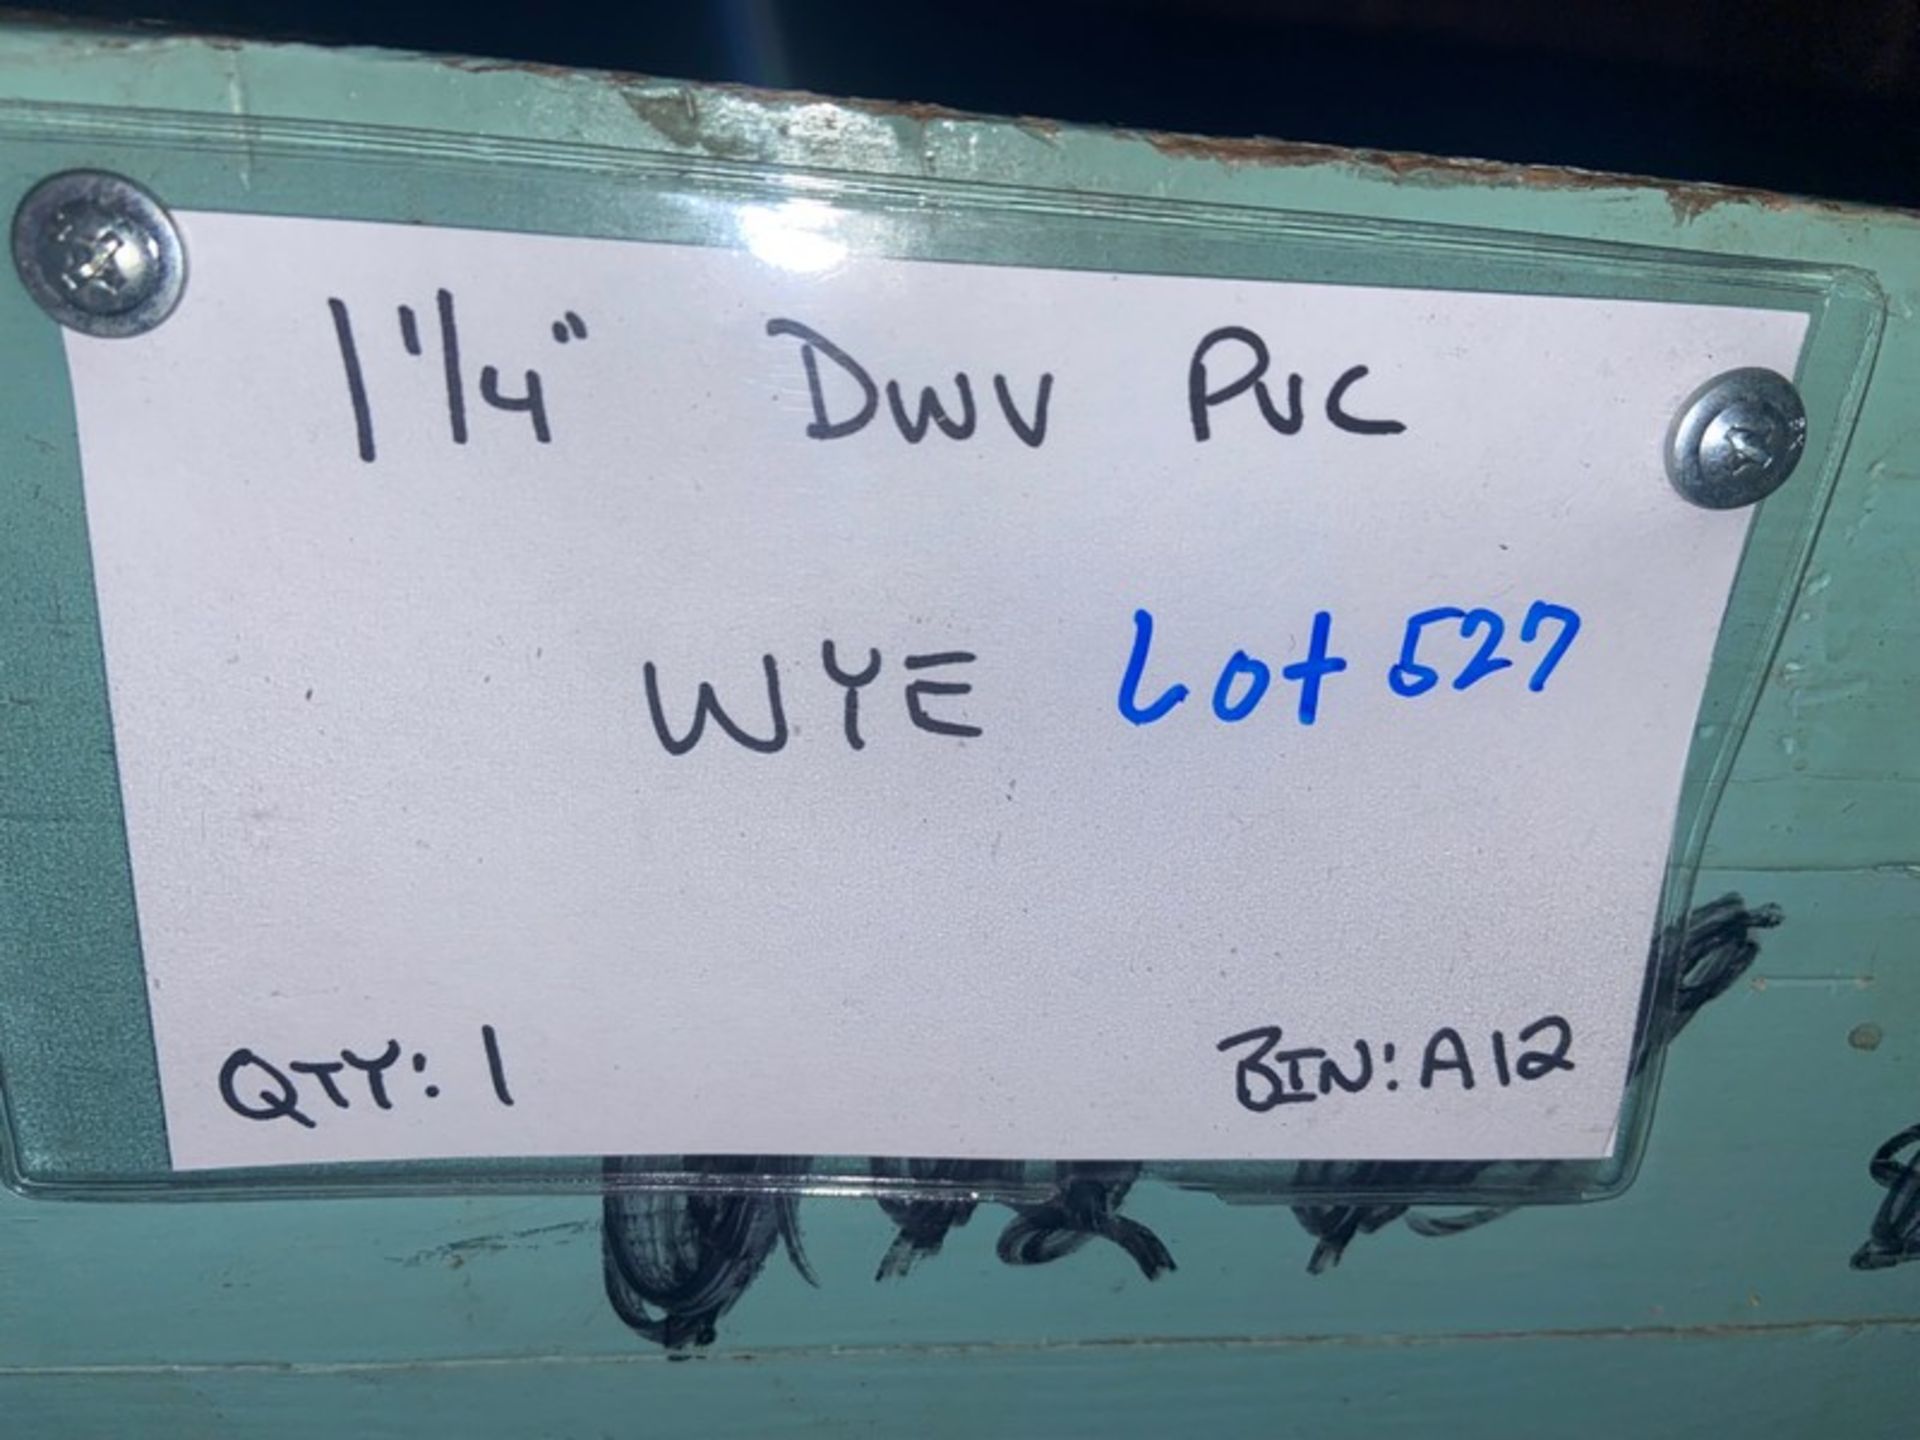 (1) 1 1/4” DWV PVC WYE (Bin:B12); (2) 1 1/4” DWV PVC TEE (Bin:A12); (3) 1 1/4” DWV PVC Male - Image 5 of 9